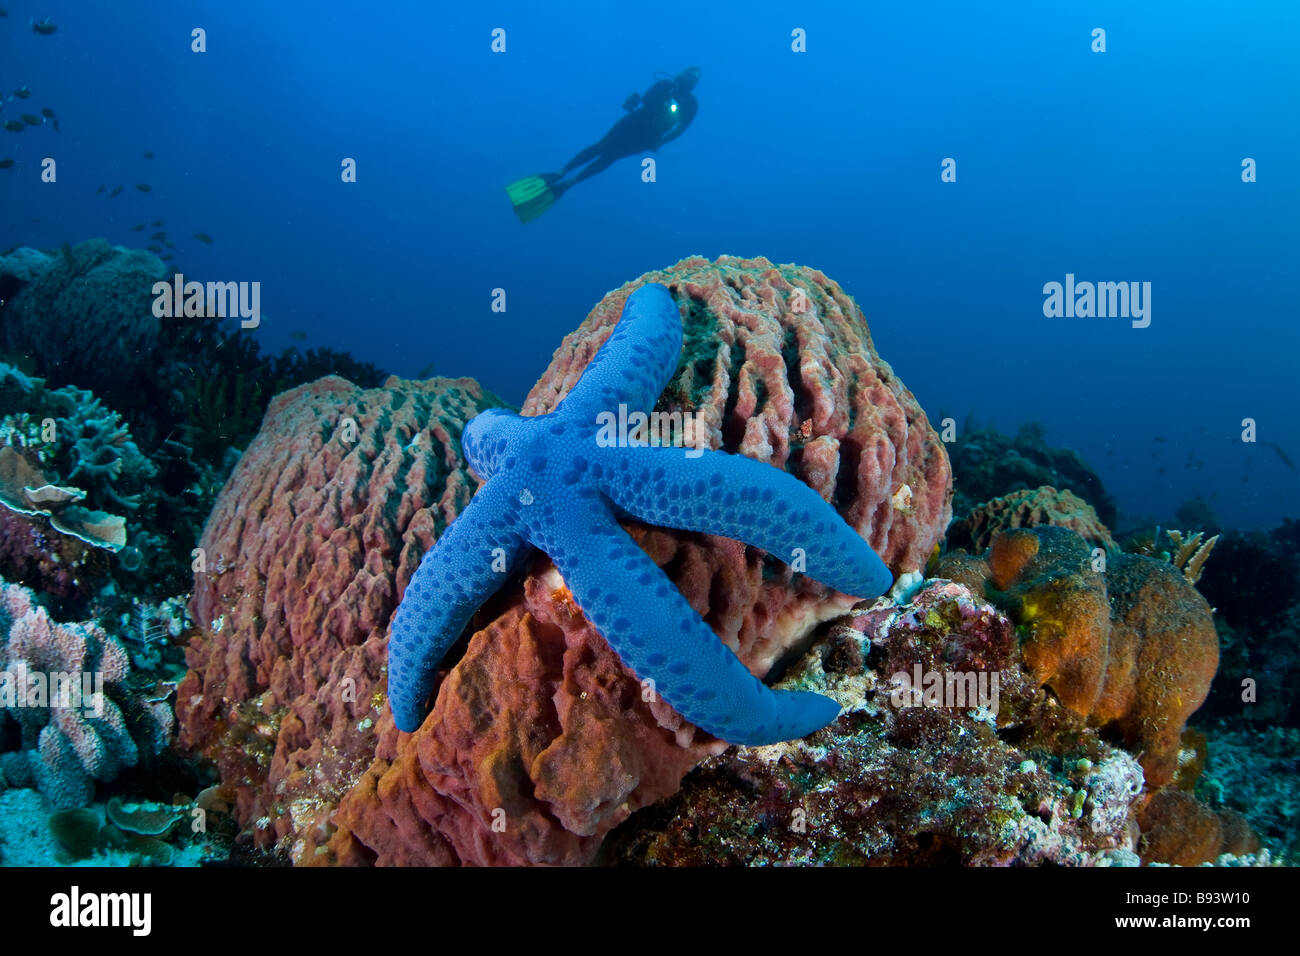 L'étoile bleue sur le corps d'une éponge et plongeur Linkia laevigata Xestospongia testudinaria Indonésie Komodo Banque D'Images